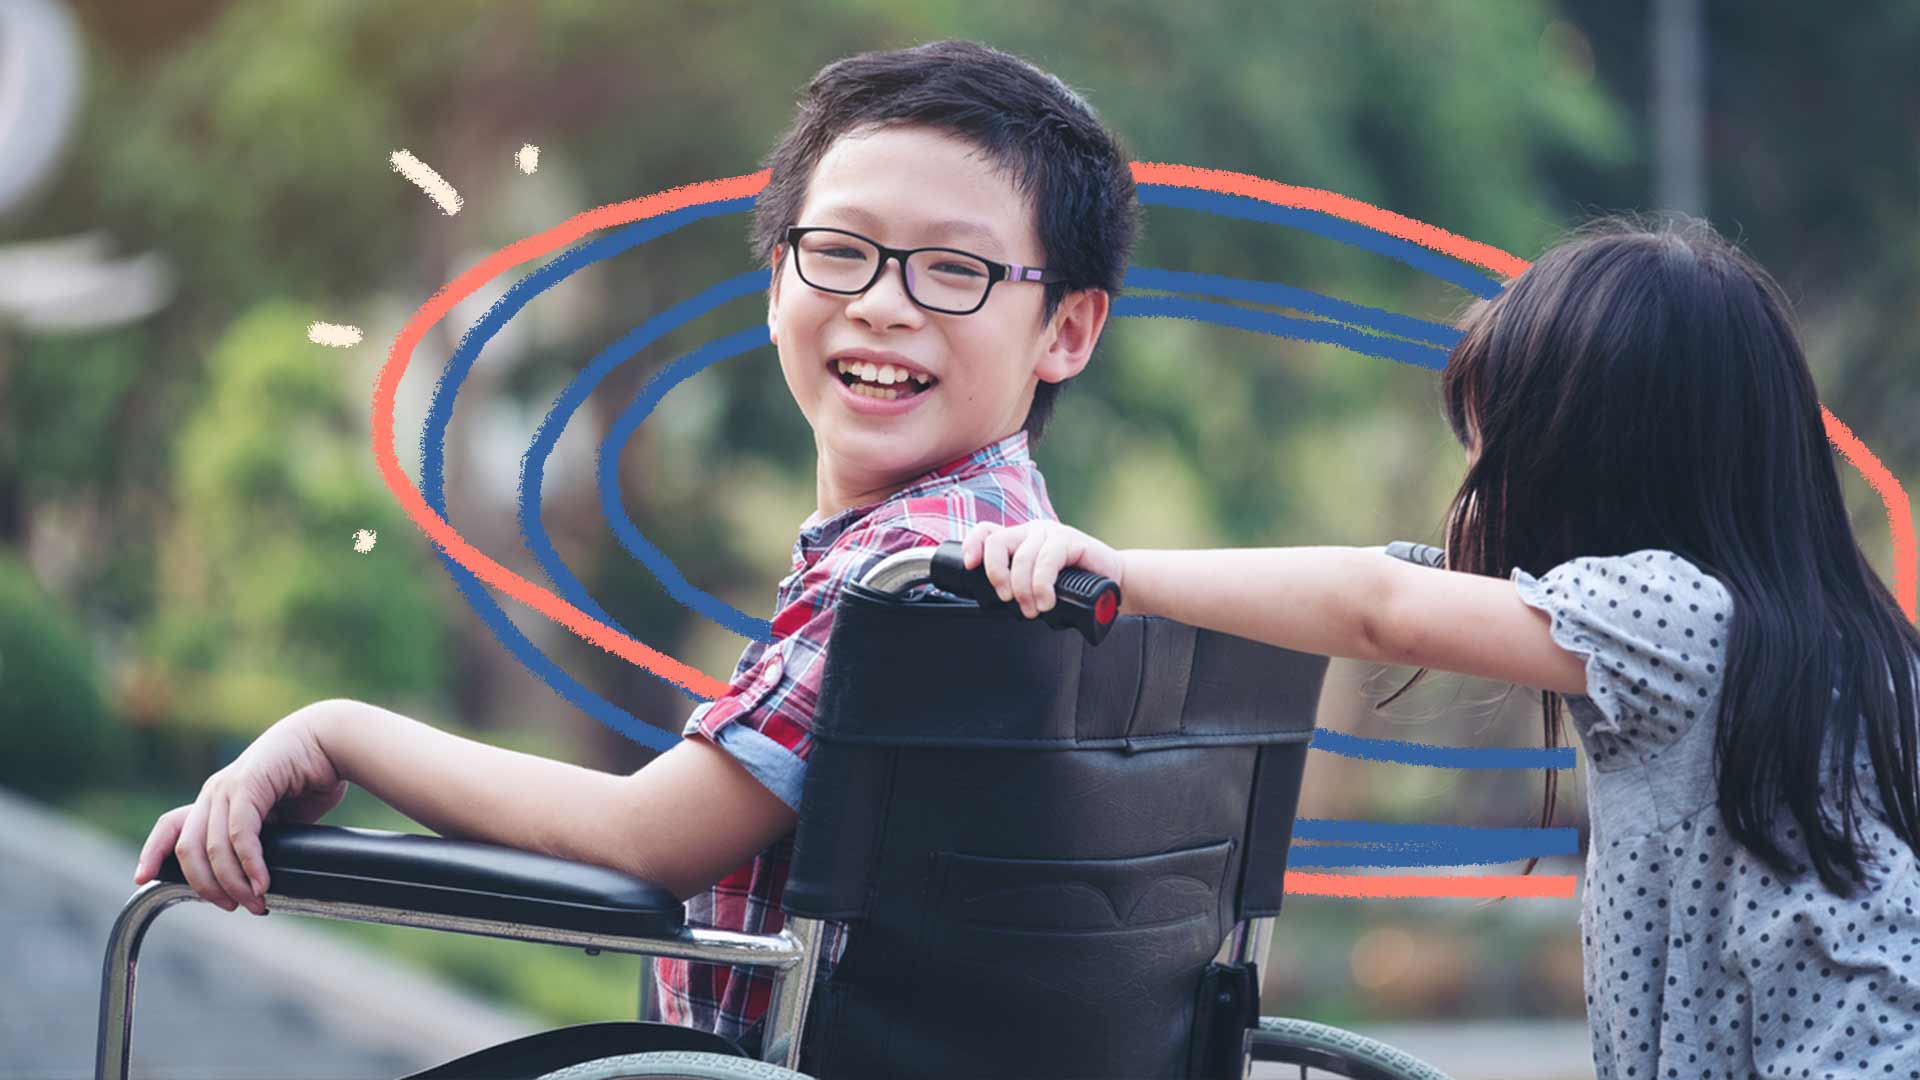 Inclusão das crianças: Foto de um menino na cadeira de rodas sorrindo e sendo empurrado por outra criança.